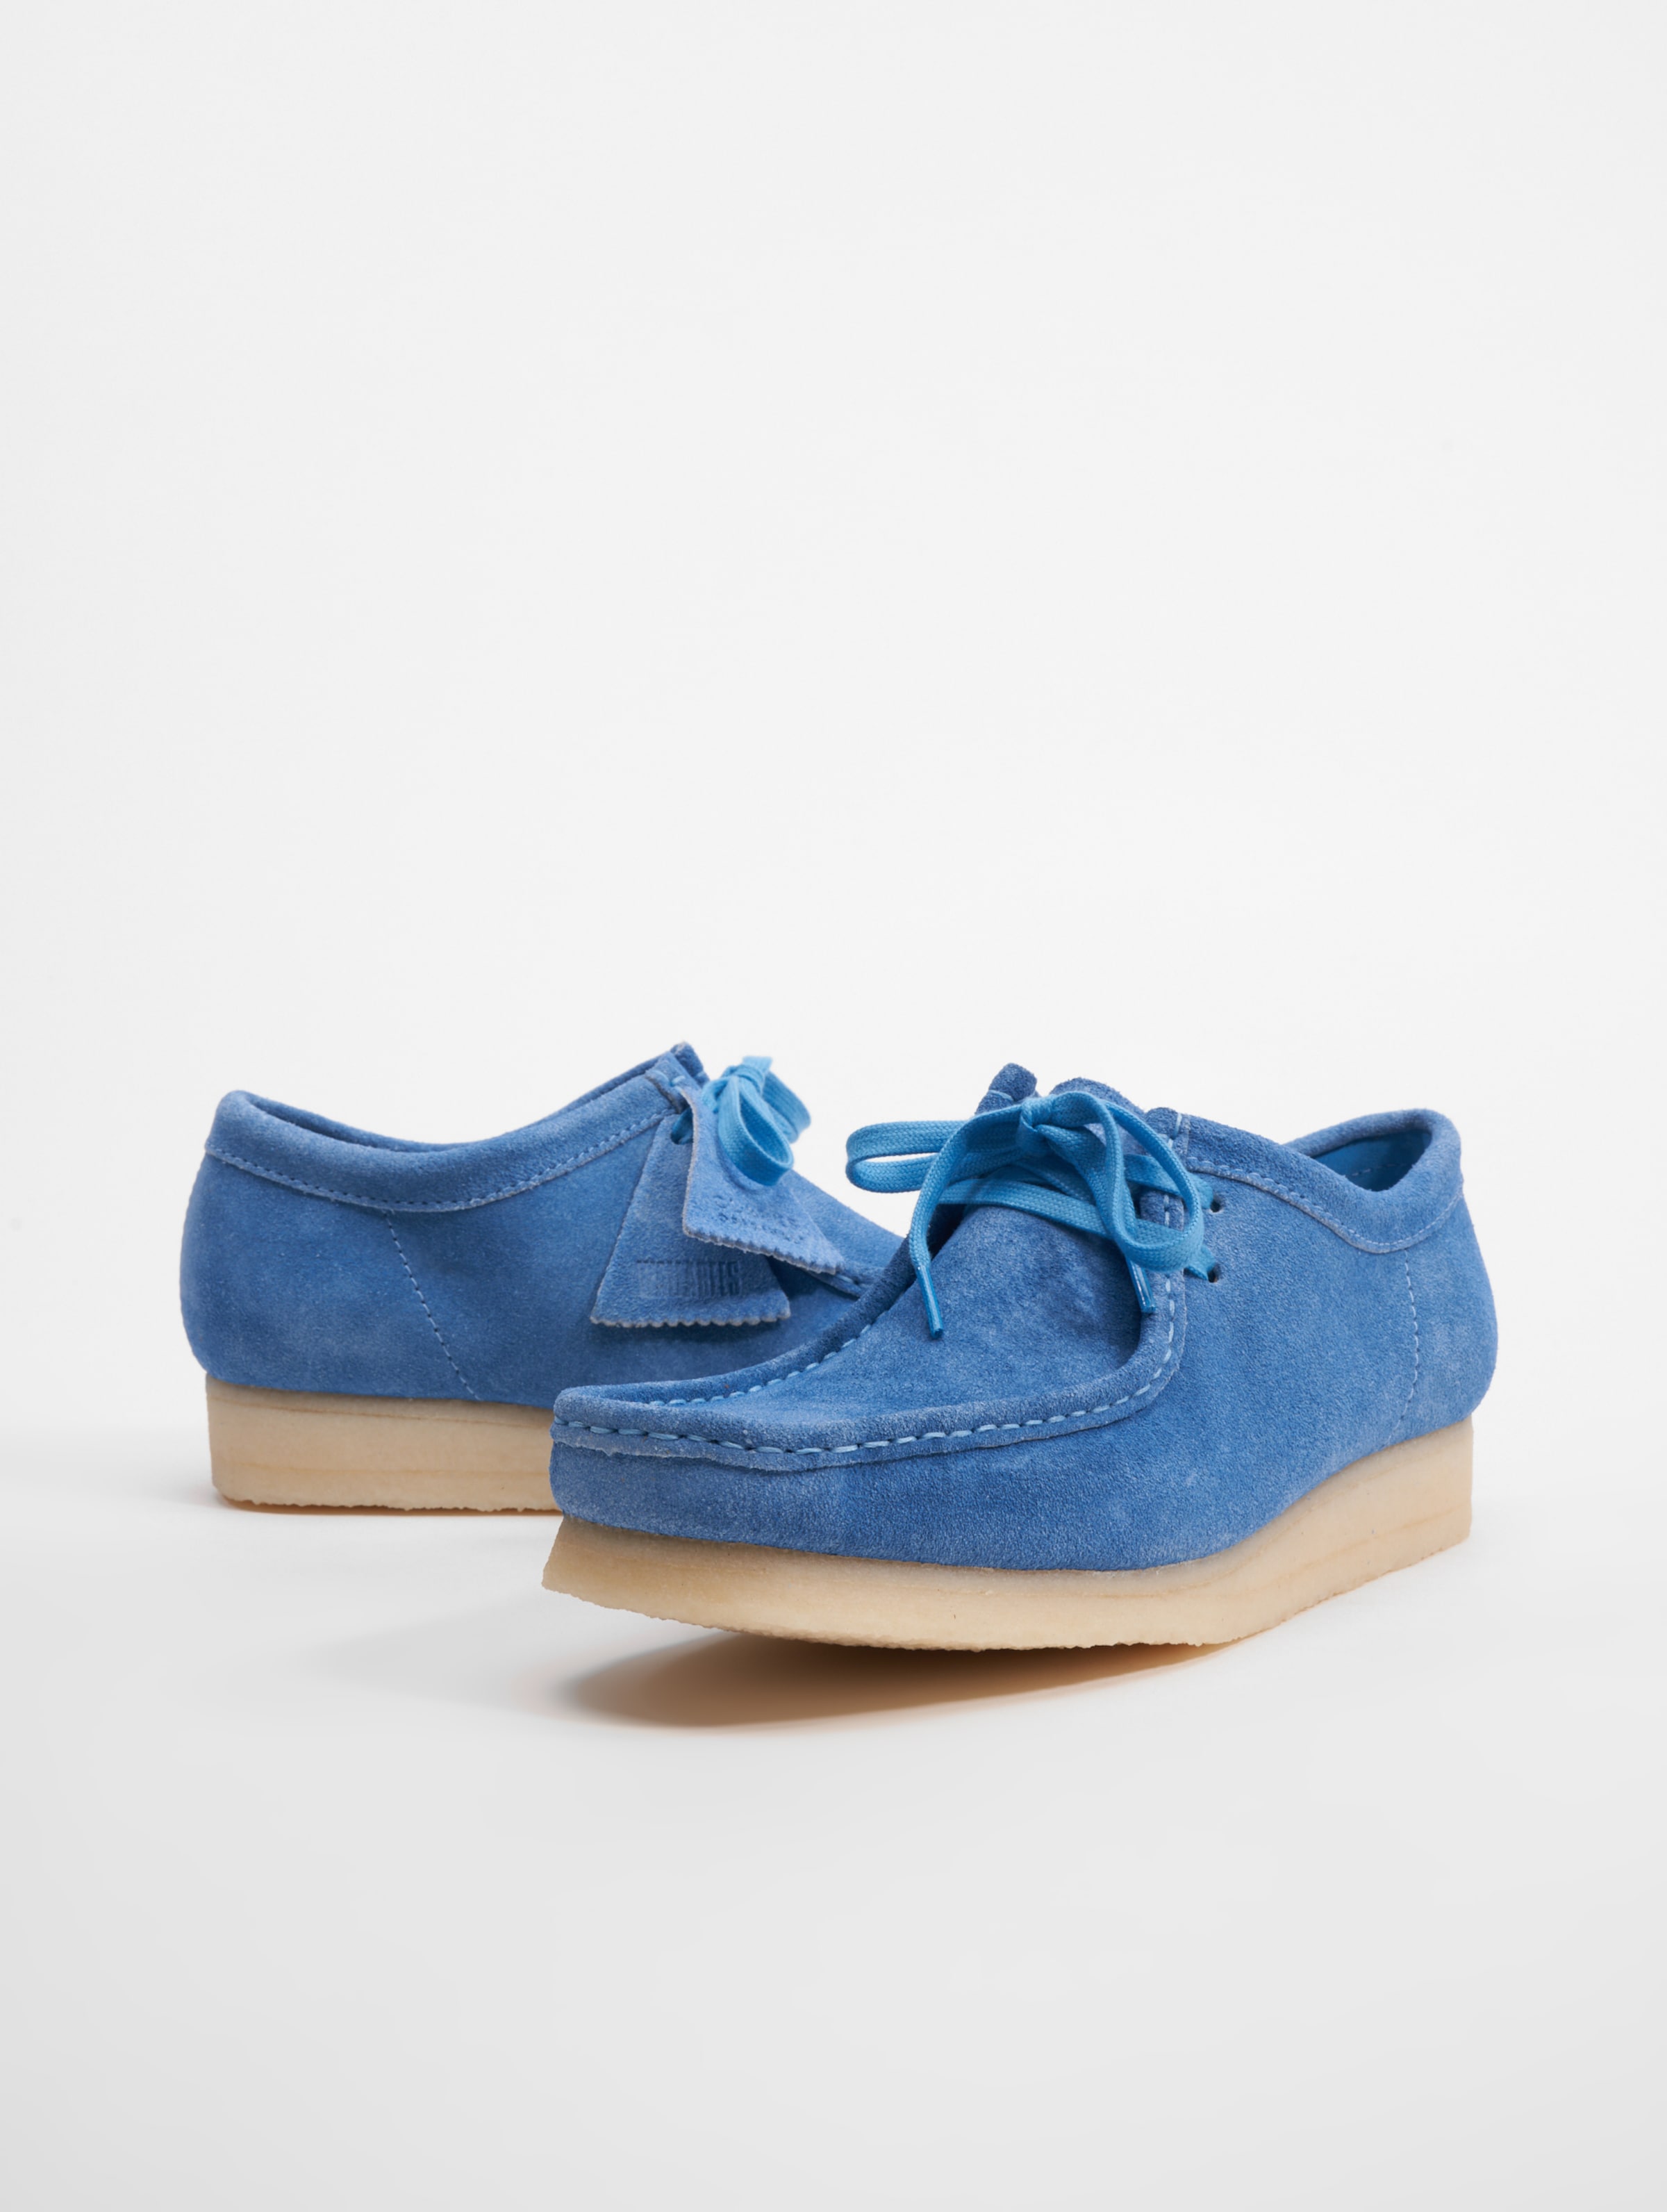 Clarks Originals Wallabee Schuhe Mannen op kleur blauw, Maat 41.5